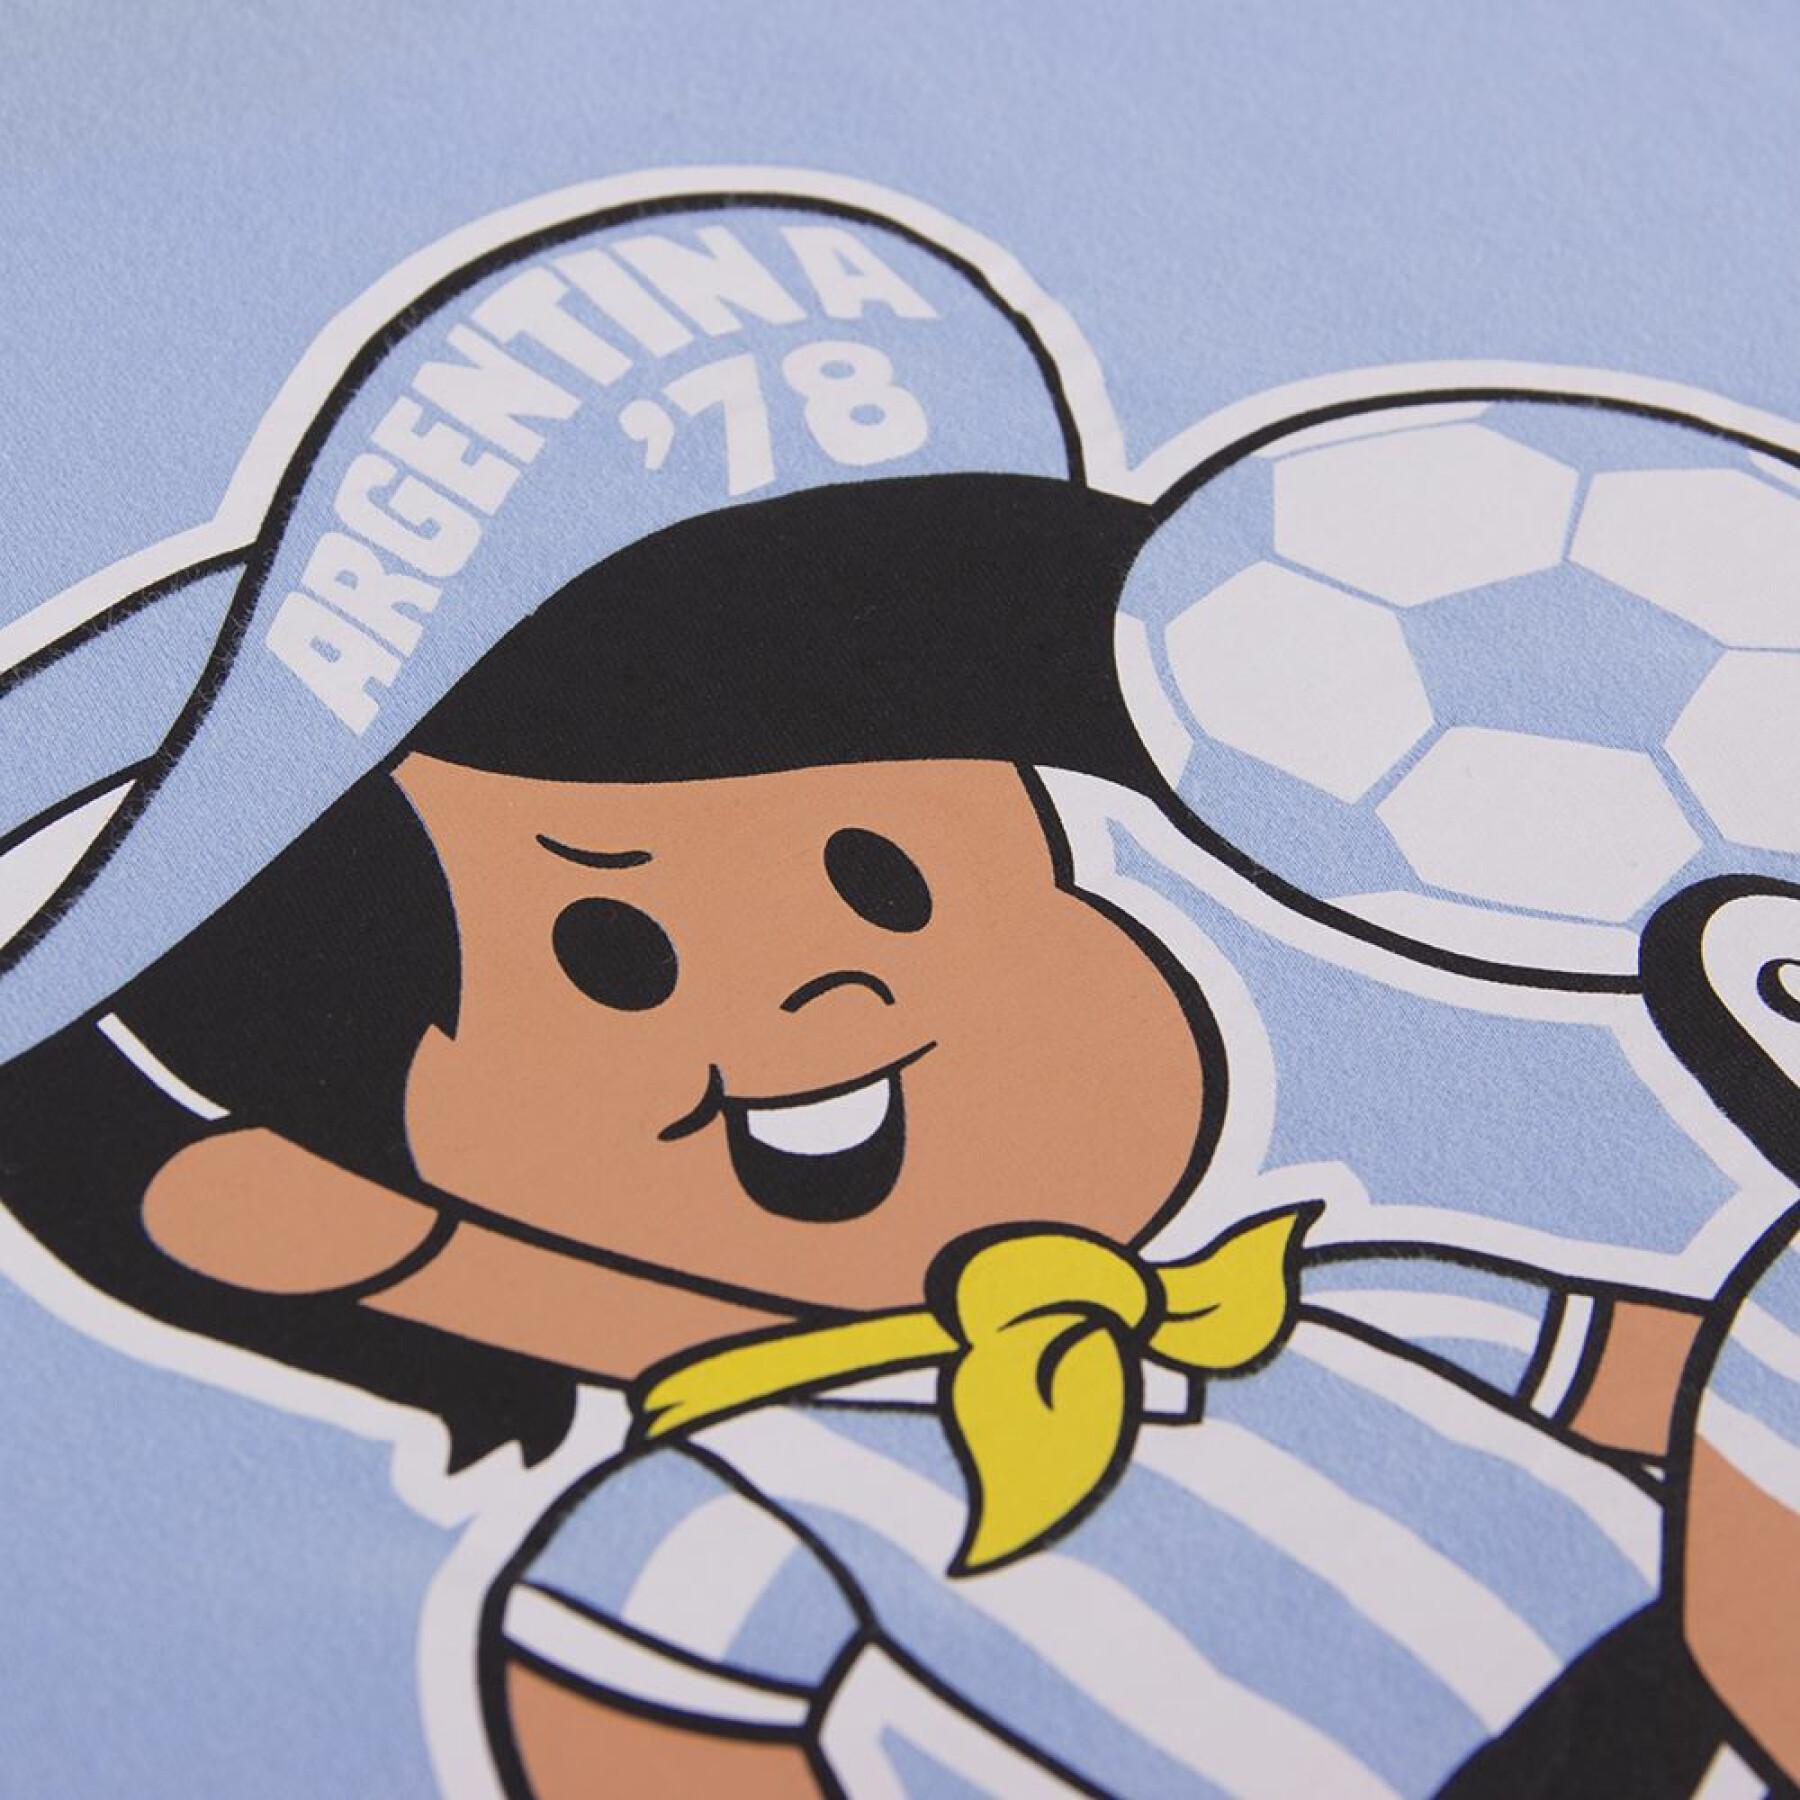 T-Shirt Copa Football Argentinien Mascot Weltmeisterschaft 1978